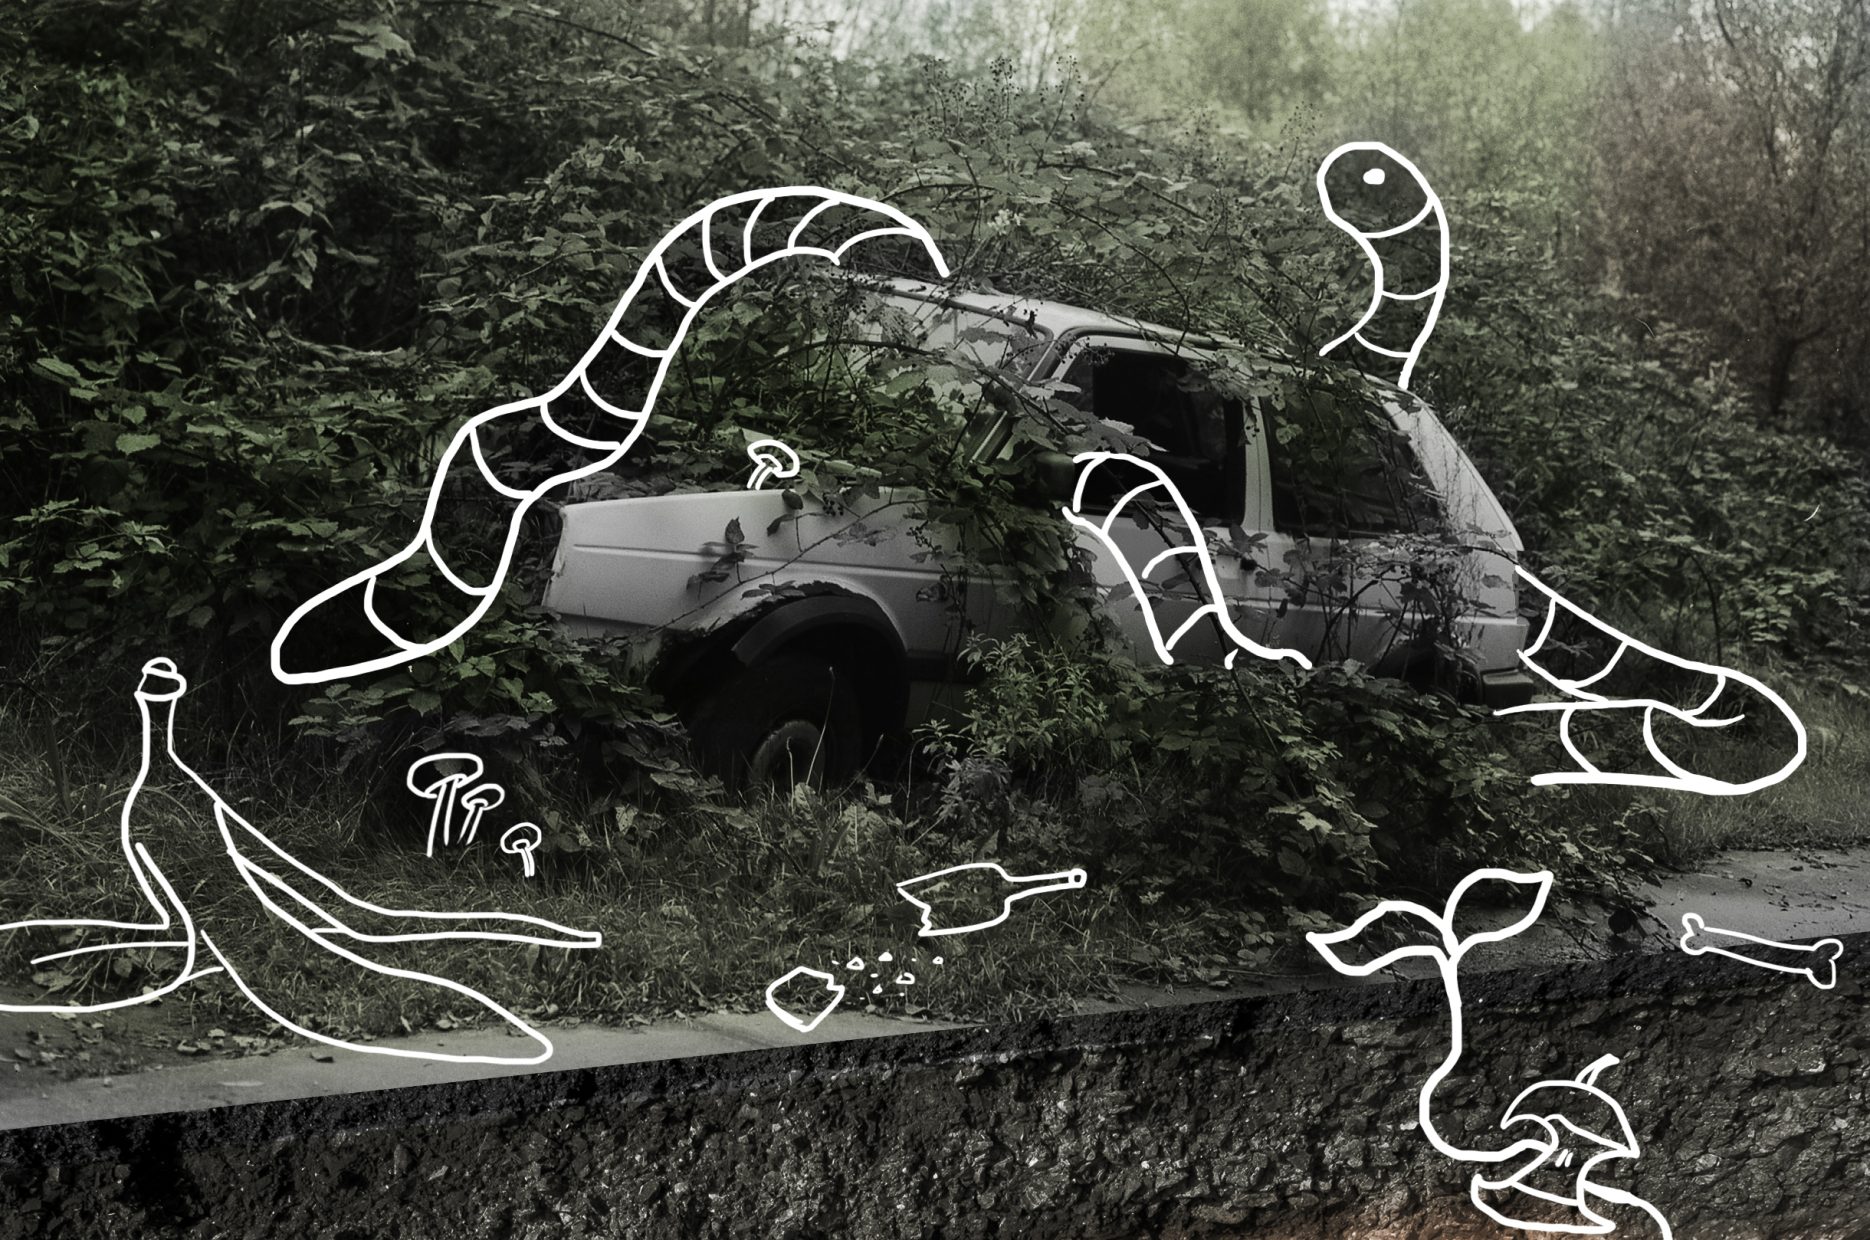 Bild zeigt die Fotografie eines mit Vegetation überwucherten Autos in Kombination mit der Zeichnung eines Regenwurms, der sich um das Auto windet.